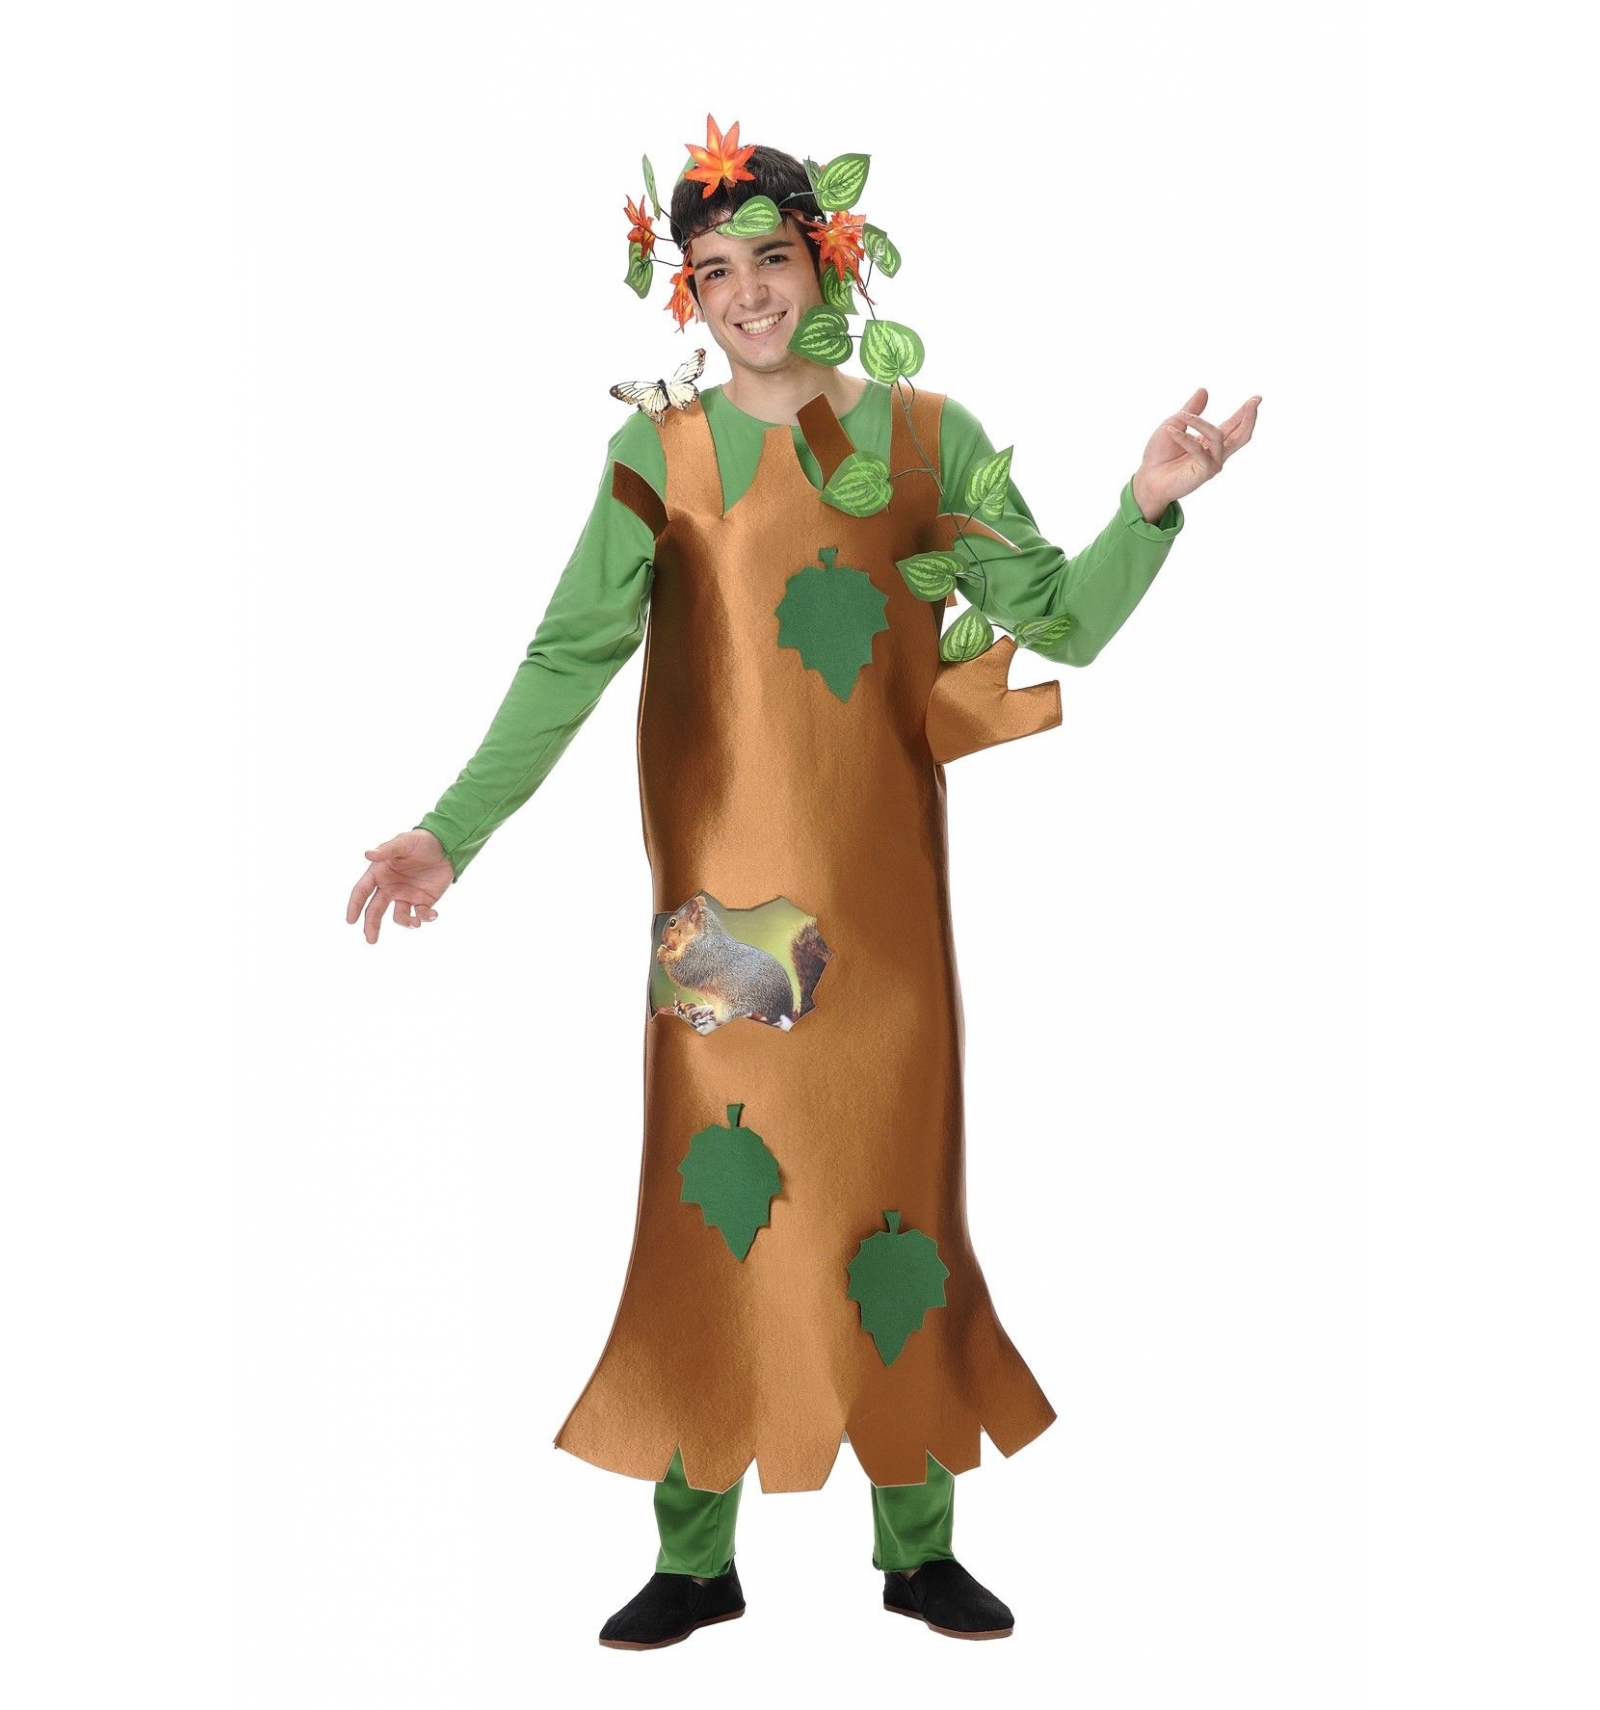 Ecologist tree costume. 